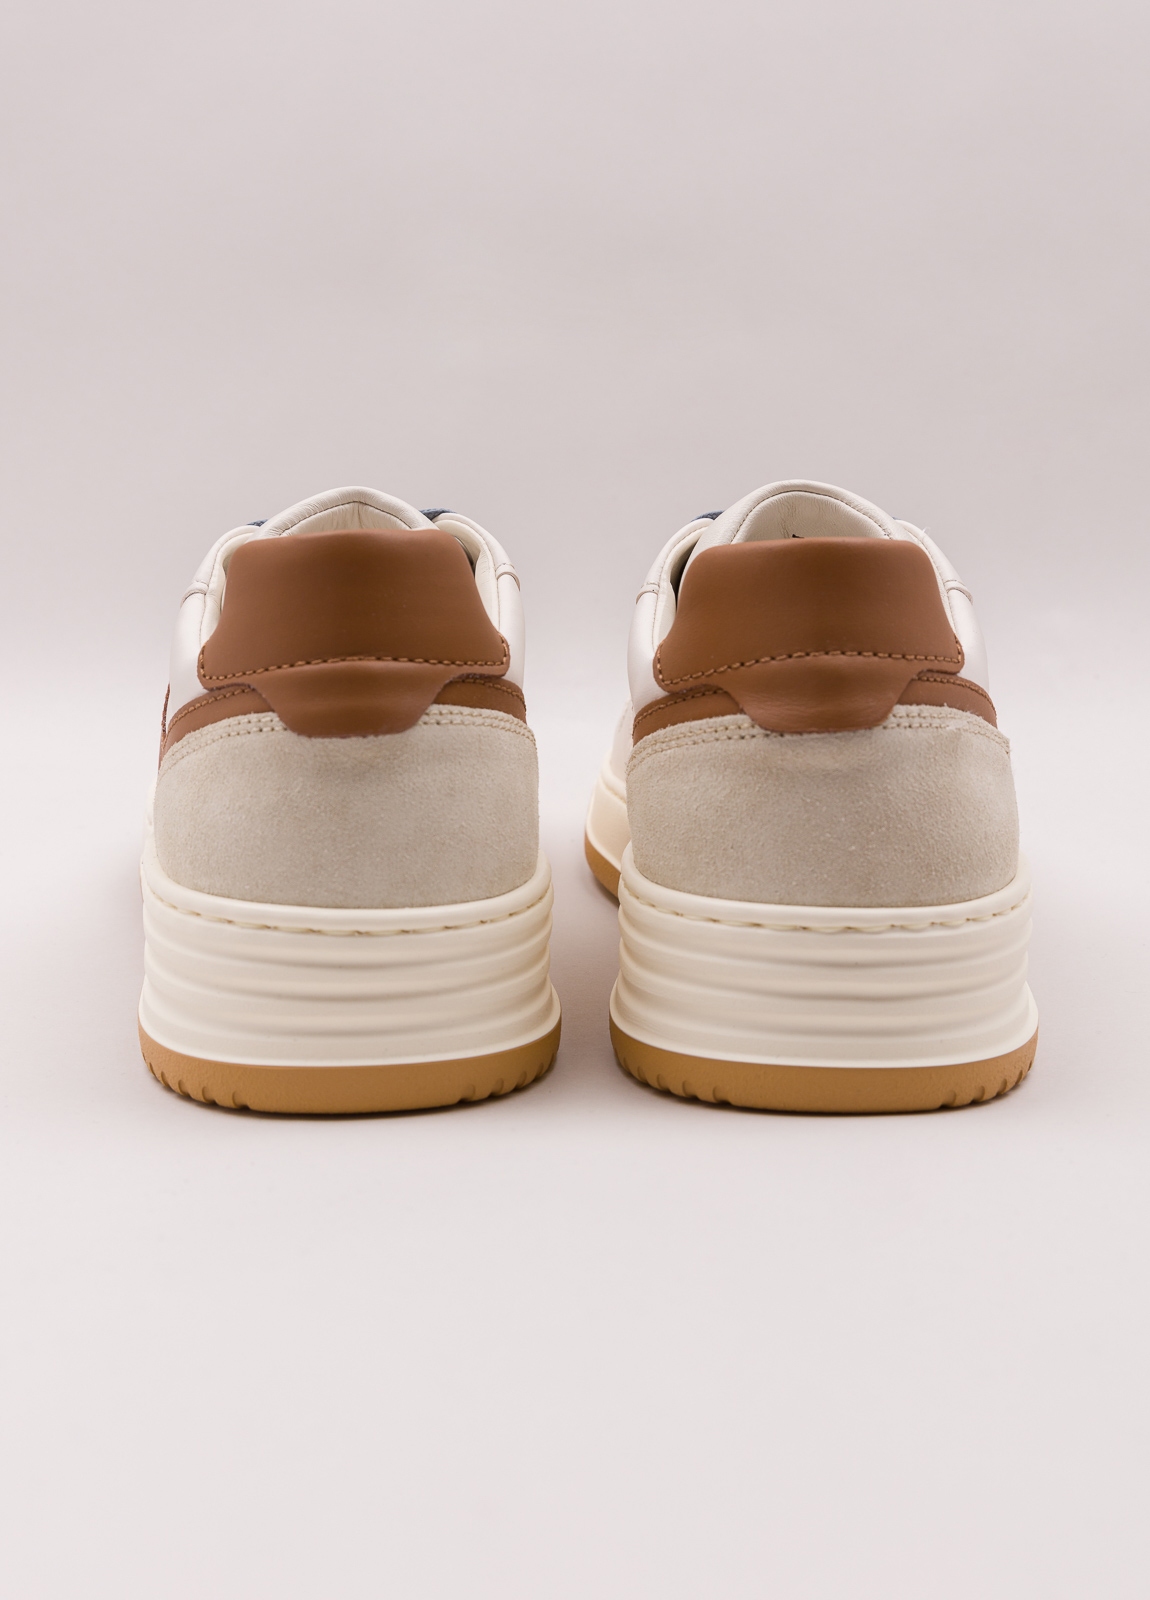 Zapatillas deportivas HOGAN color crema, beige y marrón - Ítem2